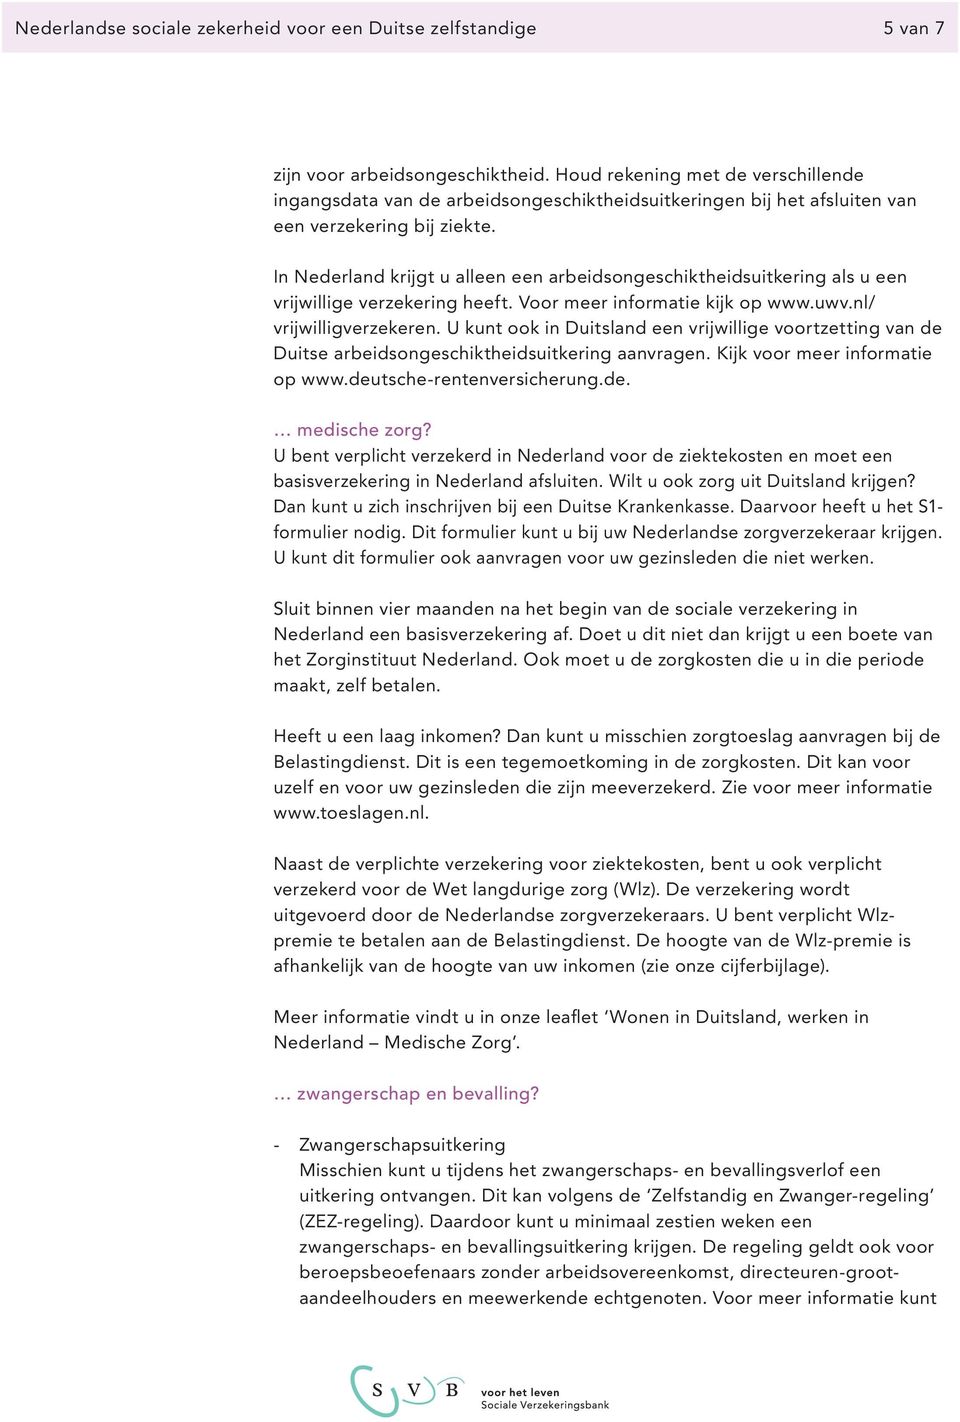 In Nederland krijgt u alleen een arbeidsongeschikt heidsuitkering als u een vrijwillige verzeke ring heeft. Voor meer informatie kijk op www.uwv.nl/ vrijwilligverzekeren.